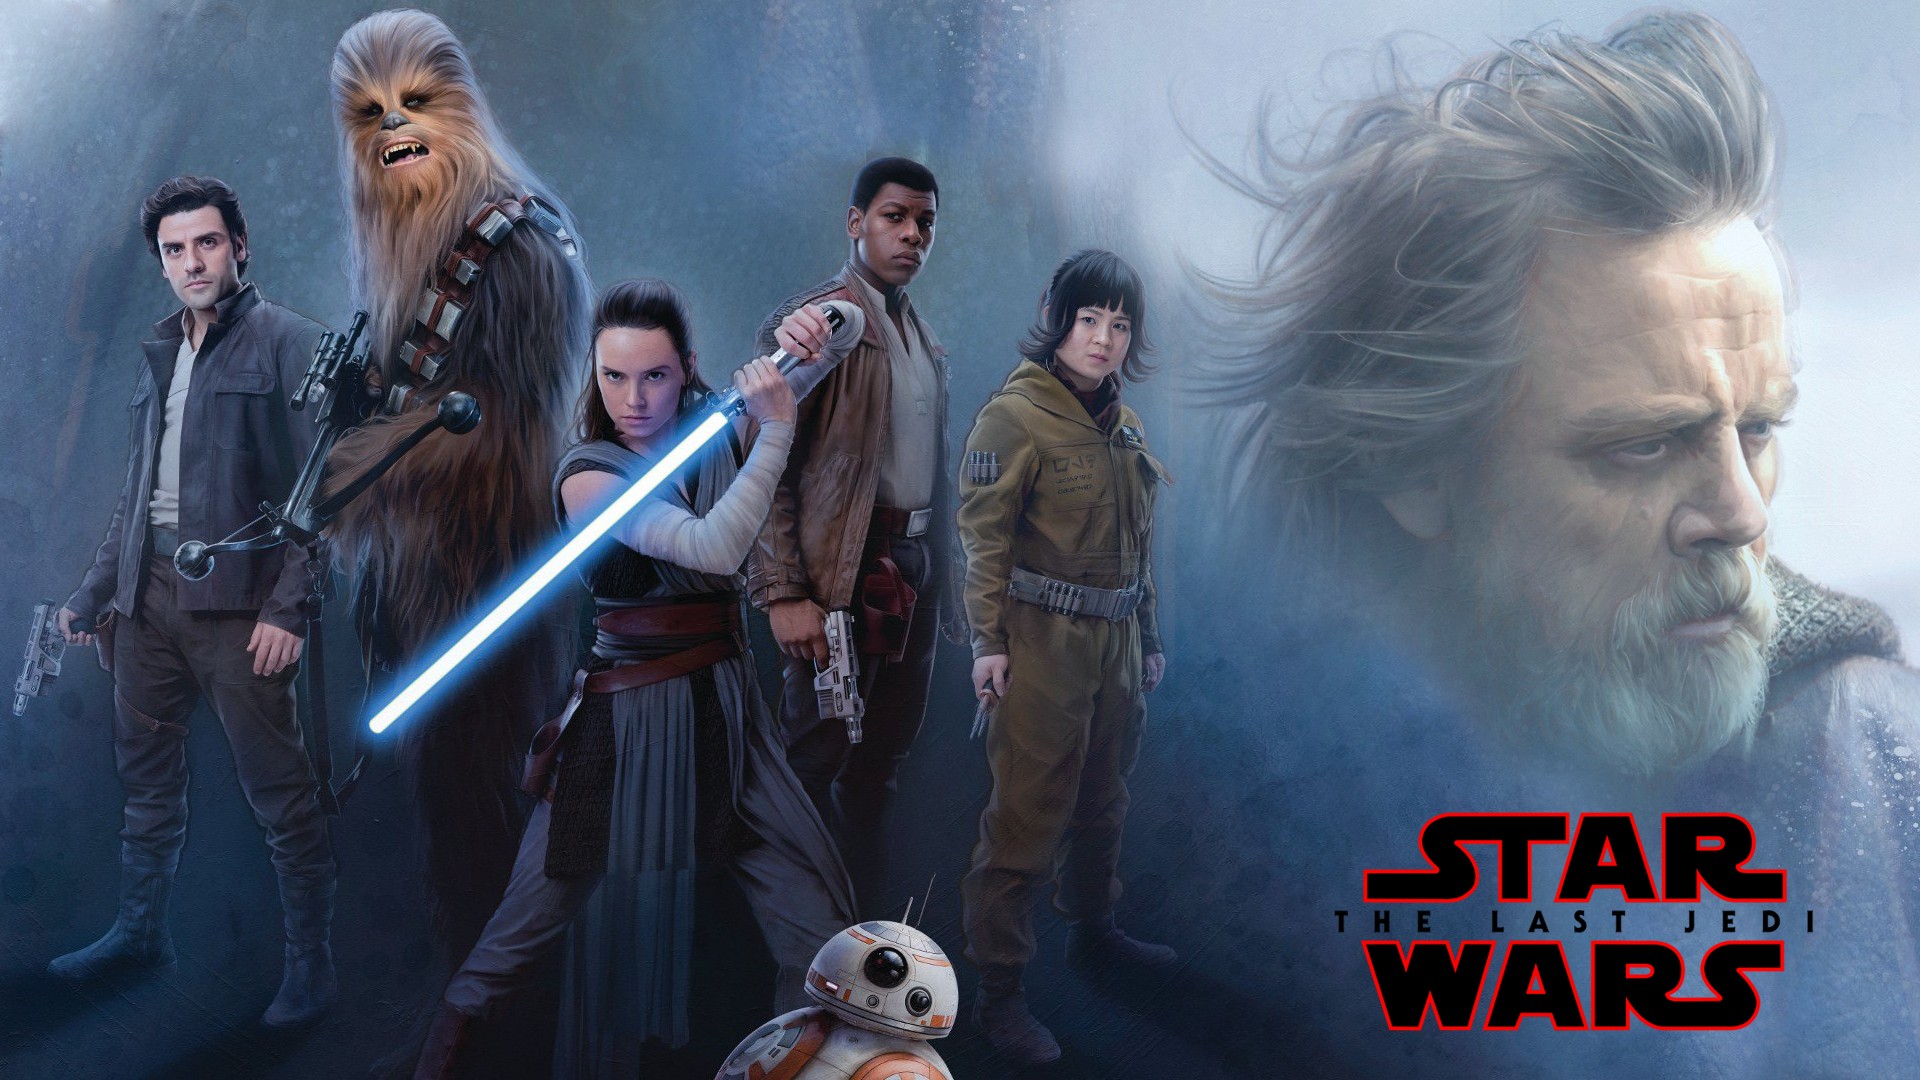 Daisy Ridley, Luke Skywalker, Star Wars: The Last Jedi, Rey (from Star Wars), Lightsaber, Movies Wallpaper